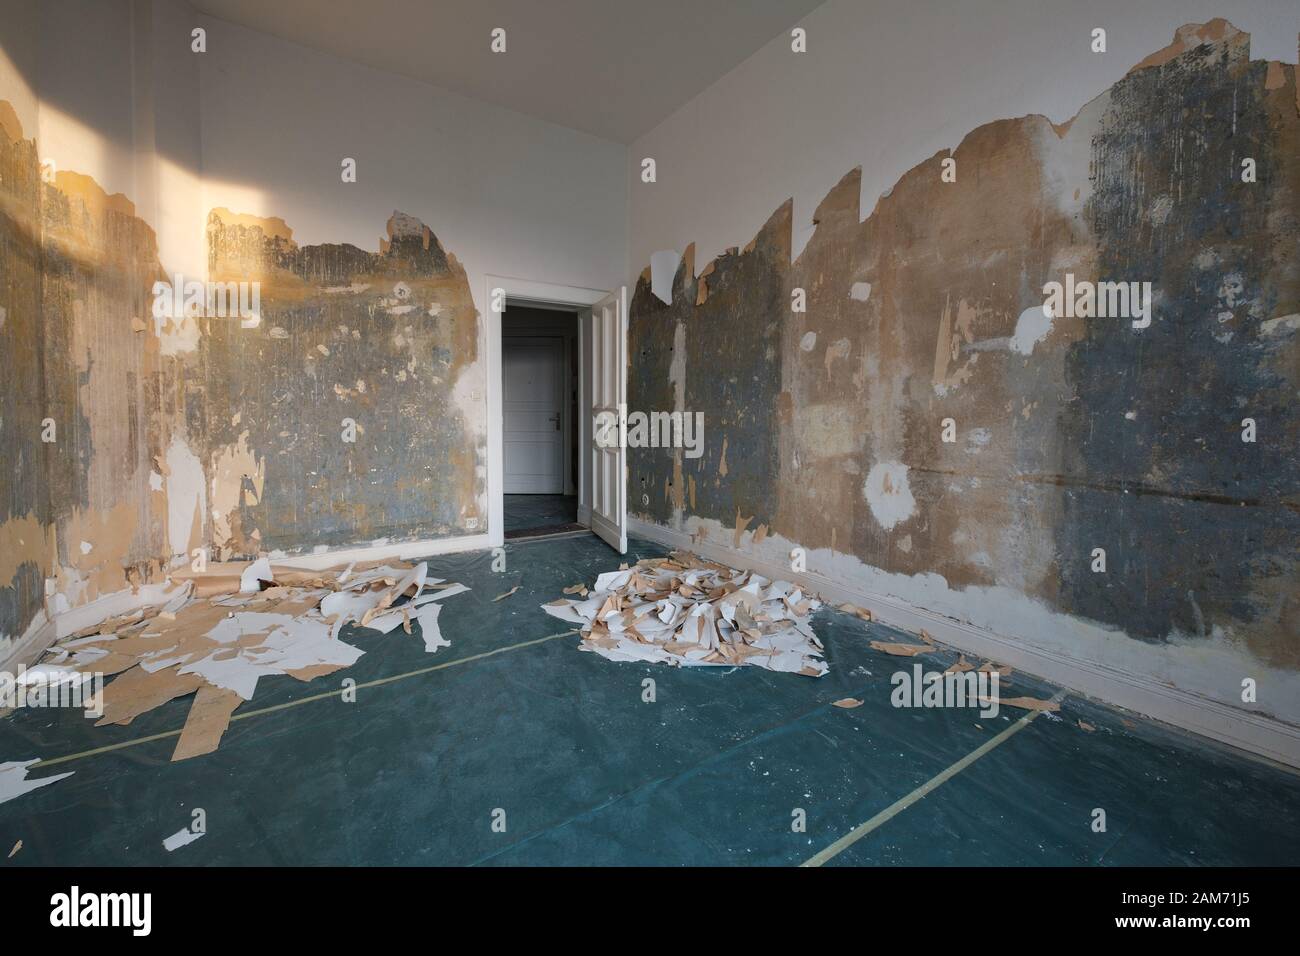 Leerer Raum bei Flachsanierung, Wohnung renovieren, Tapete entfernen - Stockfoto